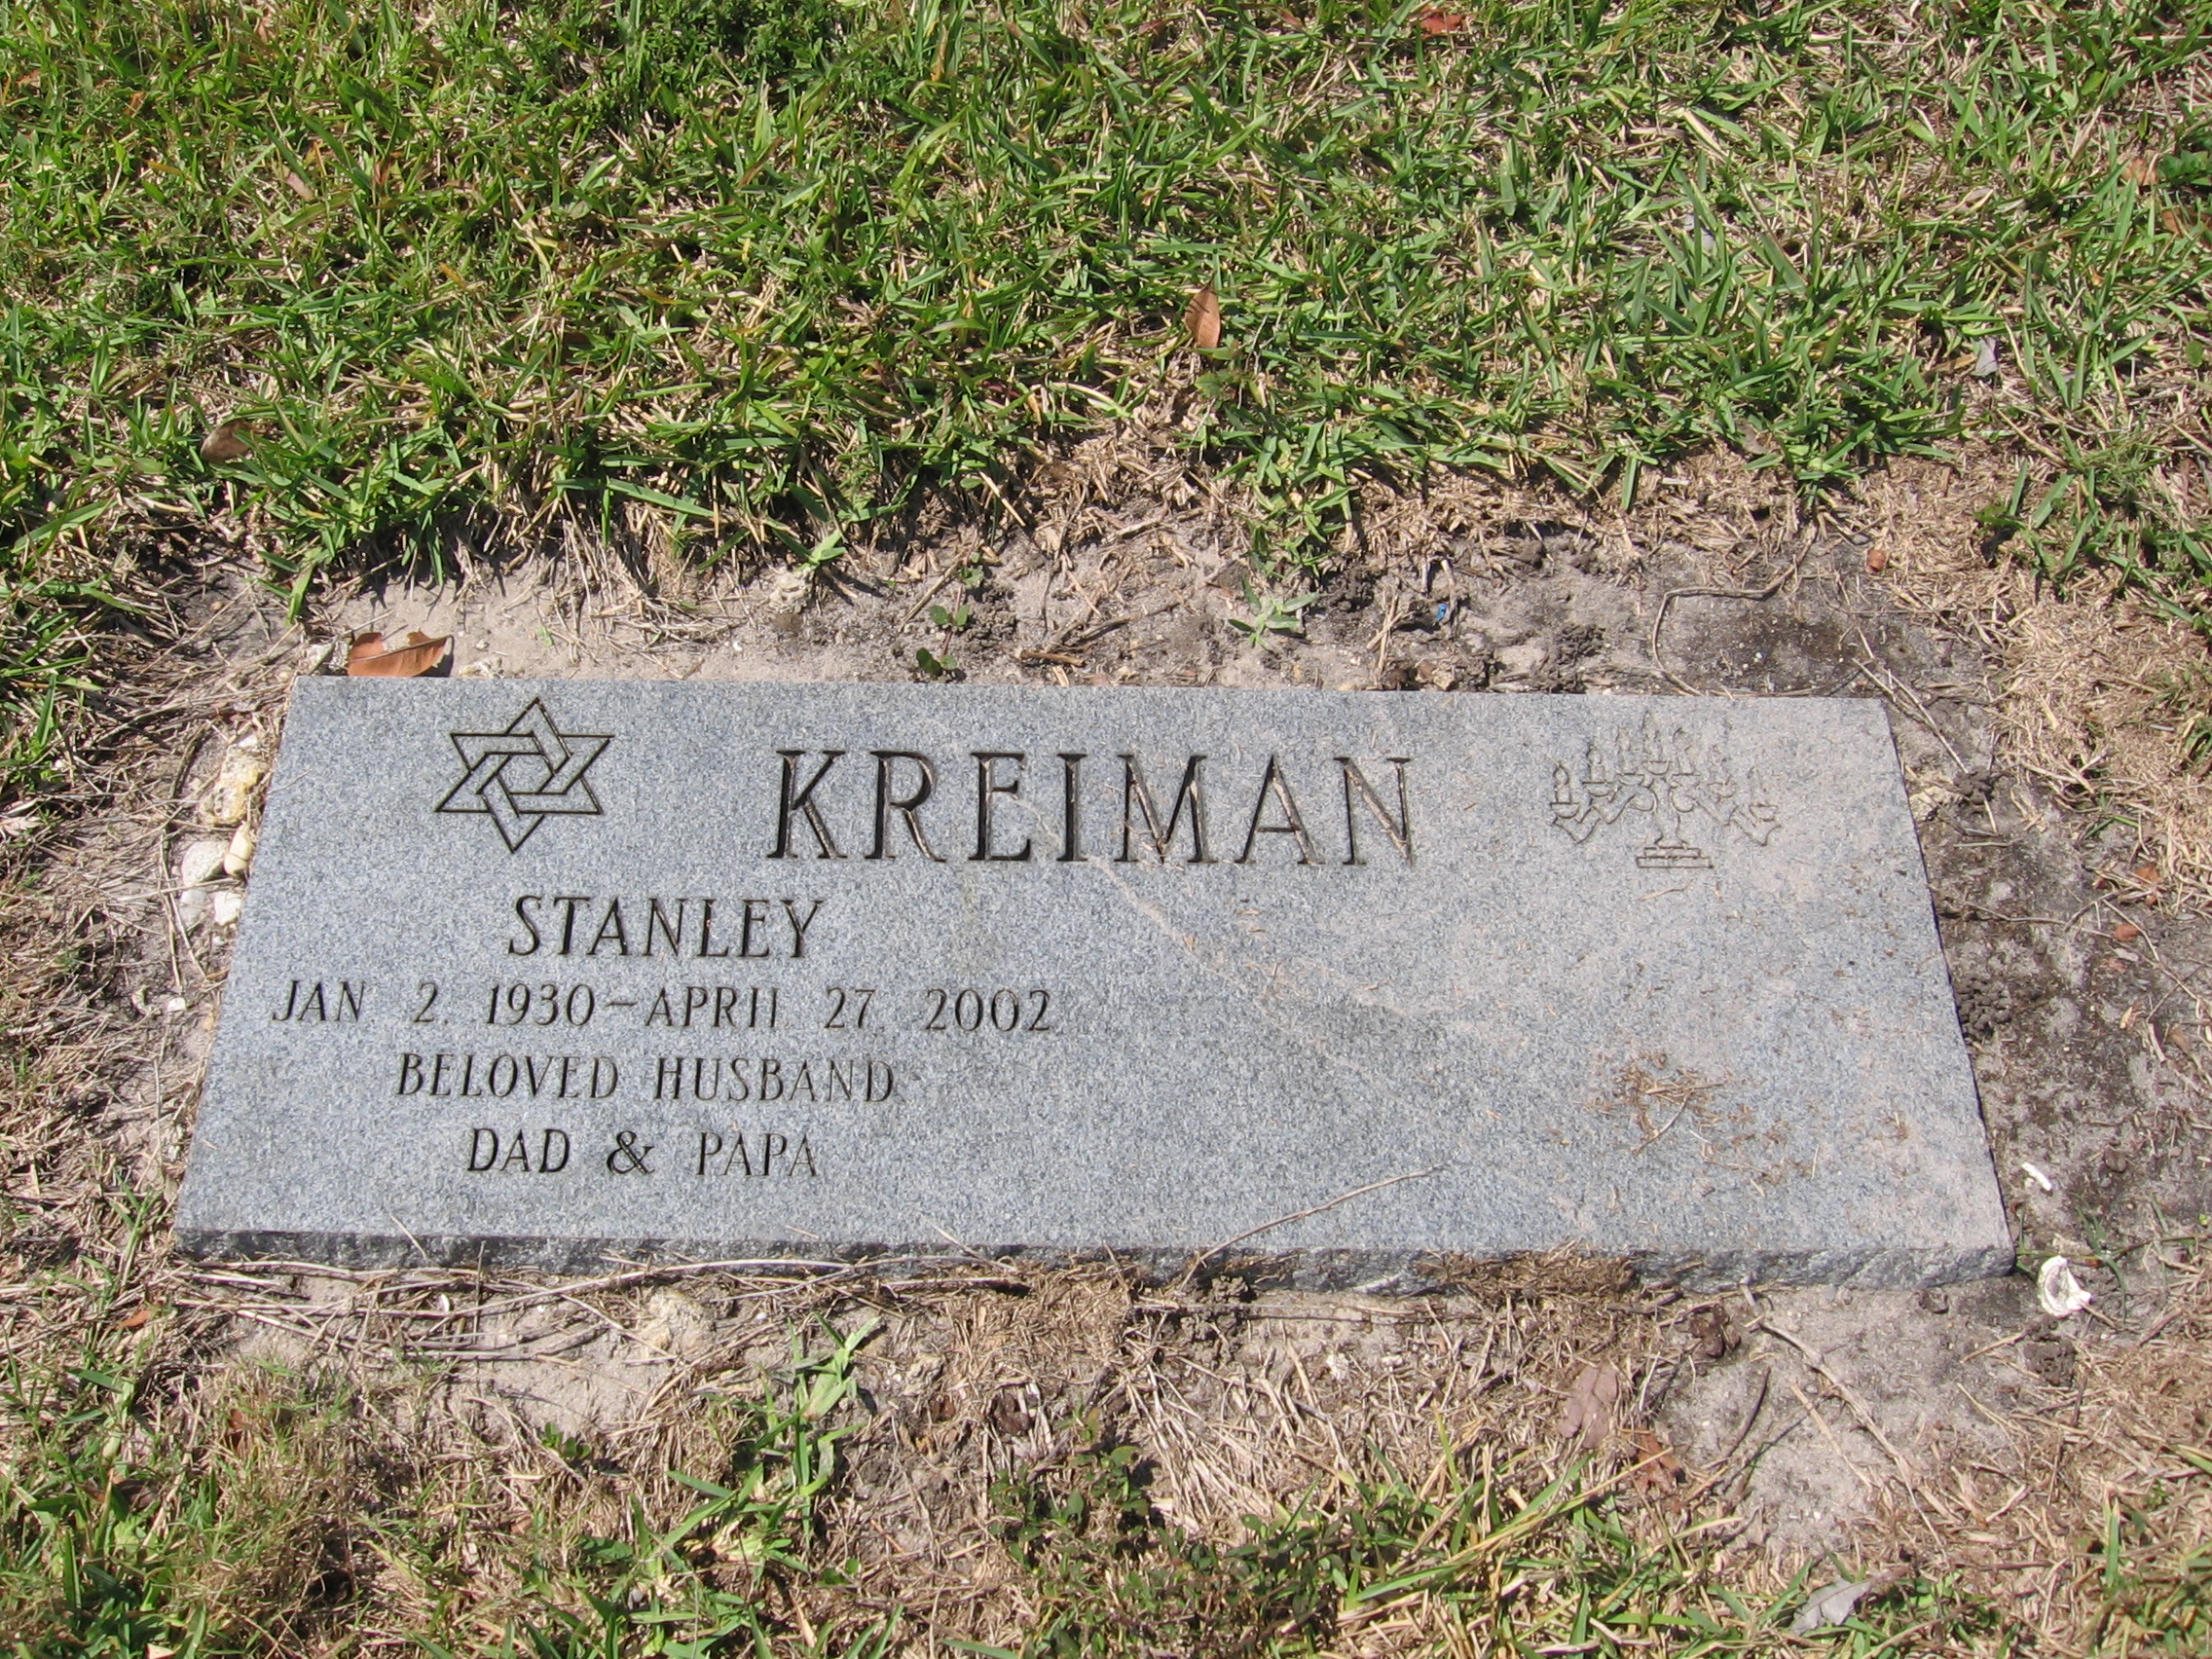 Stanley Kreiman